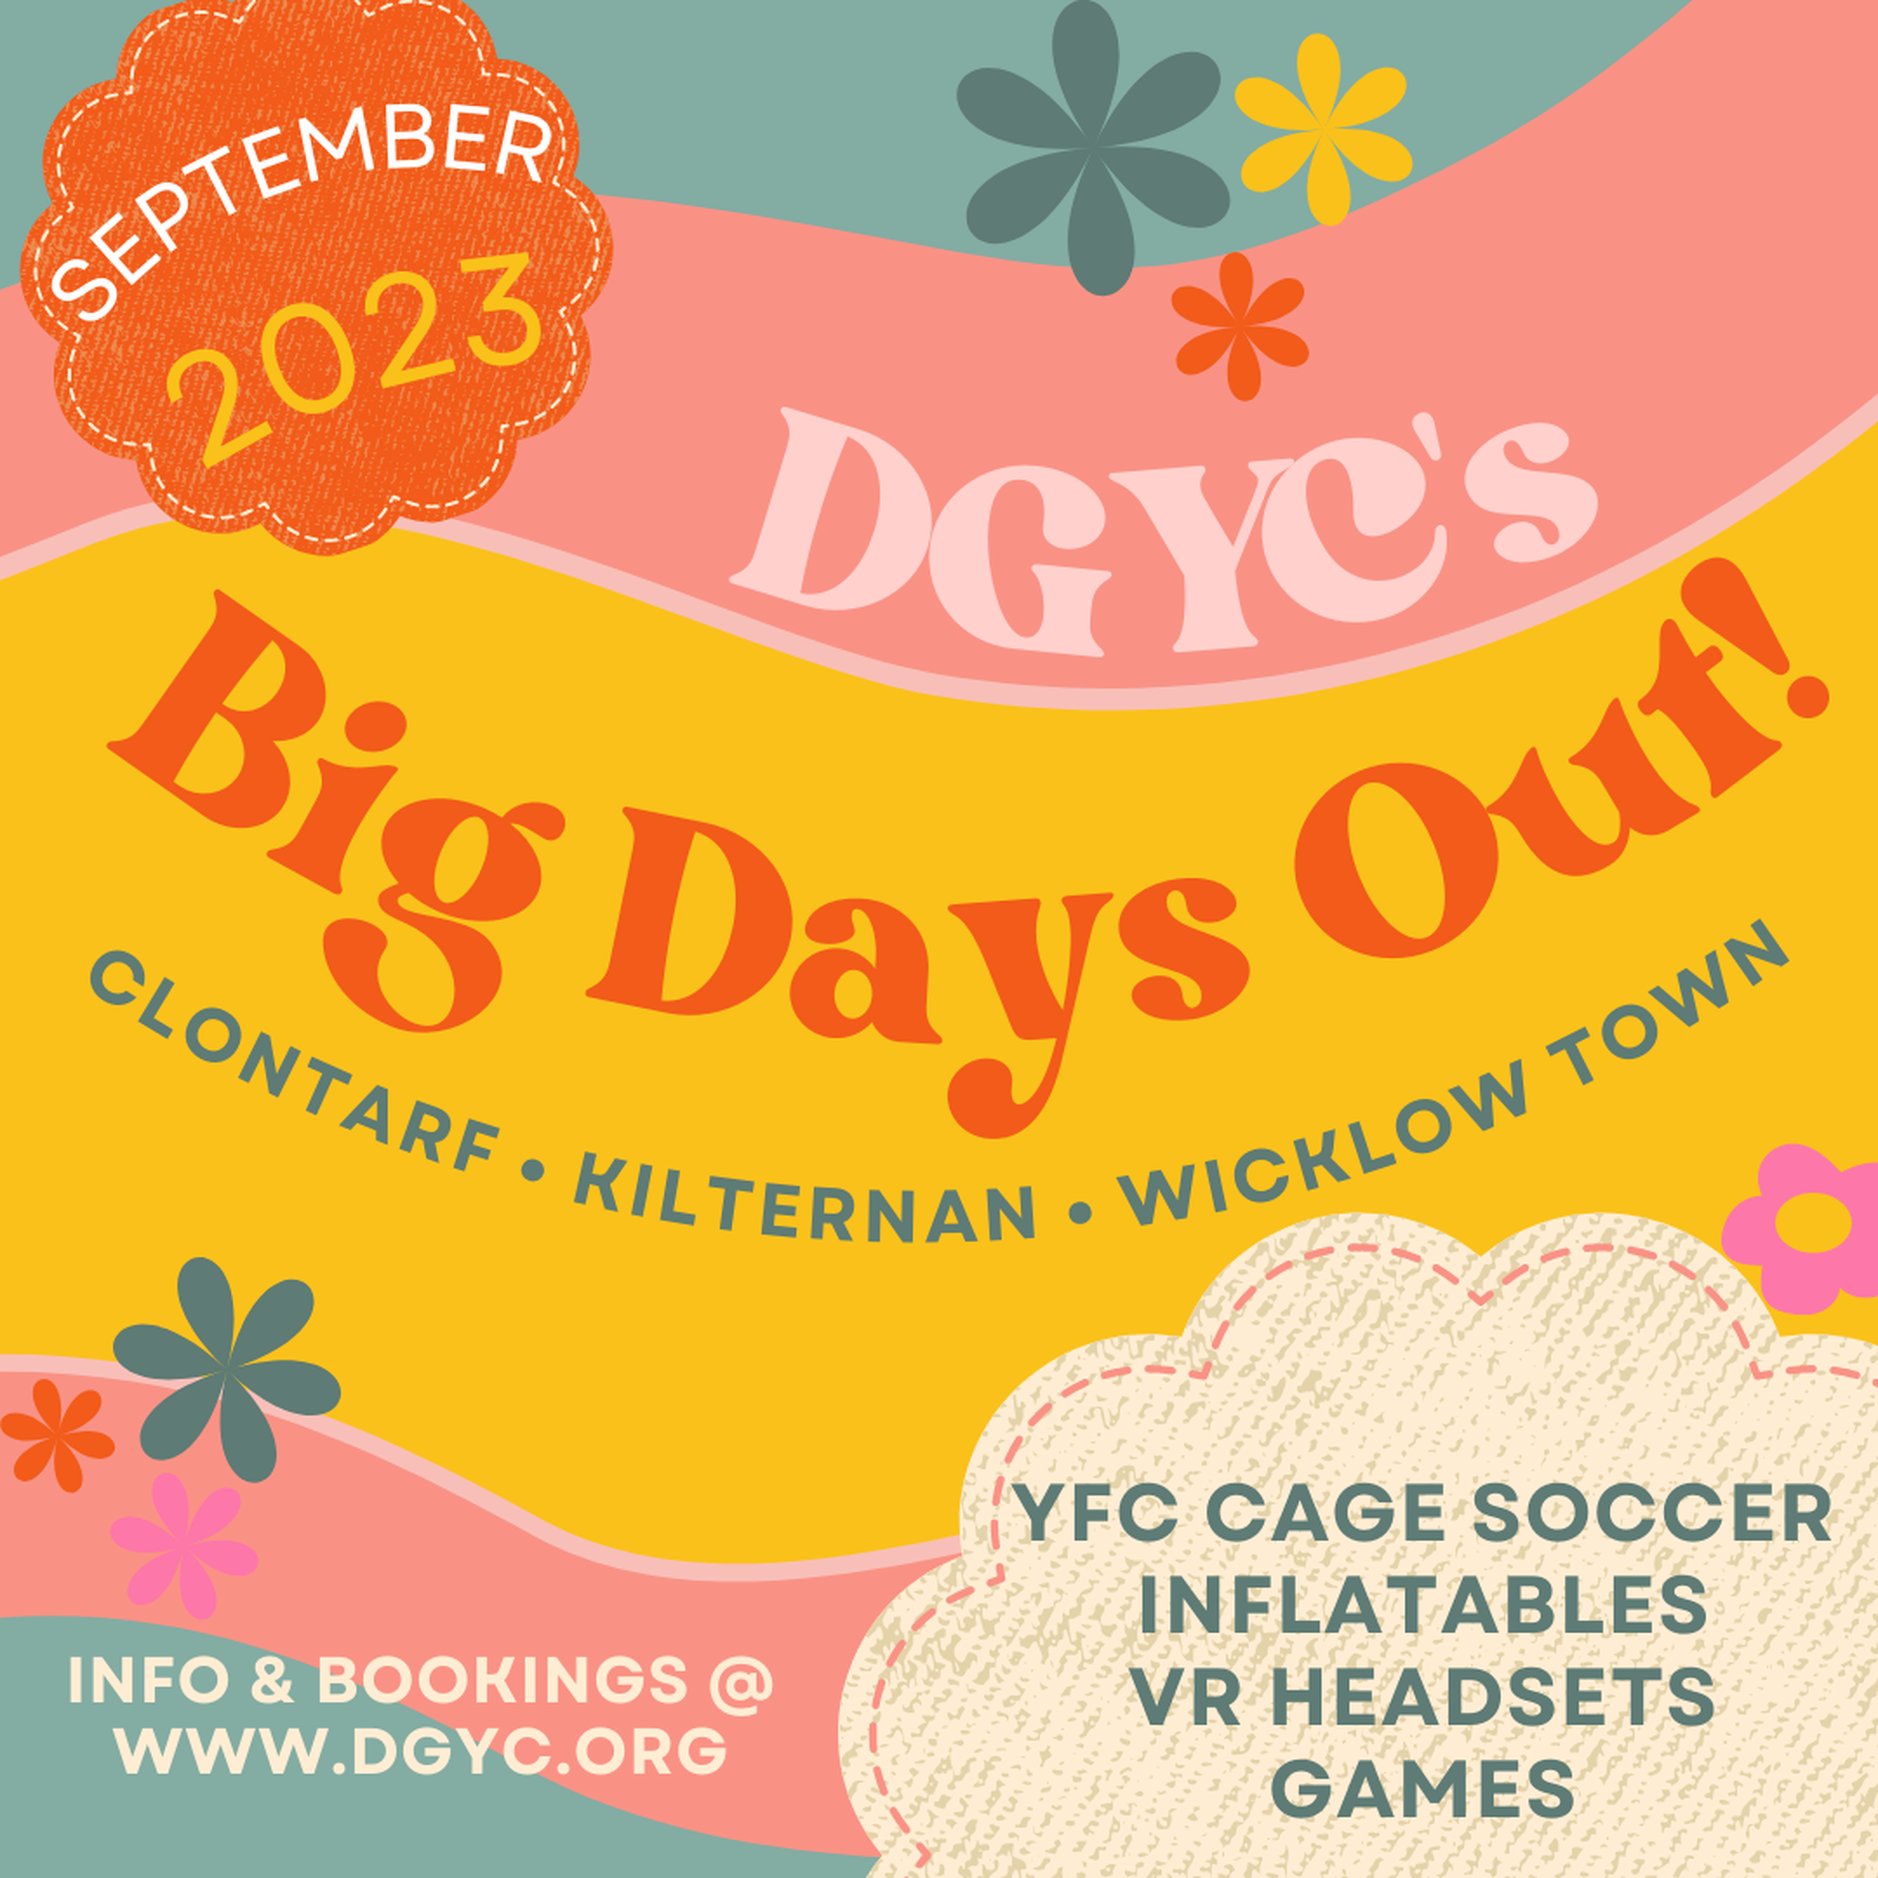 DGYC’s Big Day Out: Kilternan